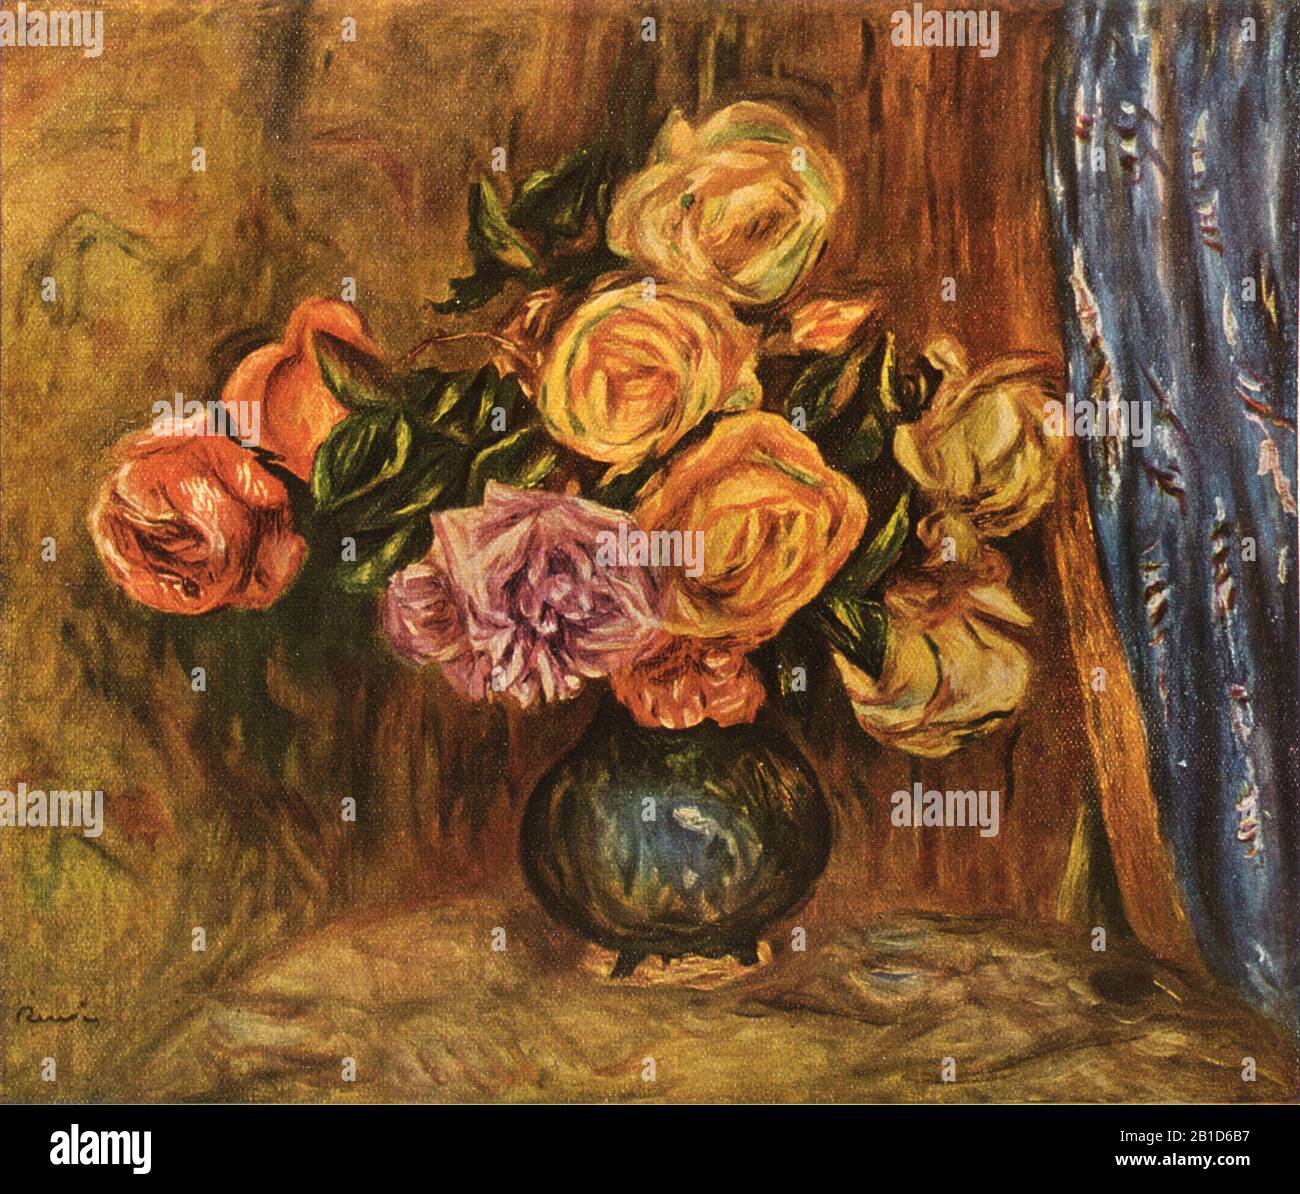 Rose di fronte a una cortina blu (1908) - Pittura inizio 20th Secolo di Pierre-Auguste Renoir - immagine Ad Altissima risoluzione e di qualità Foto Stock